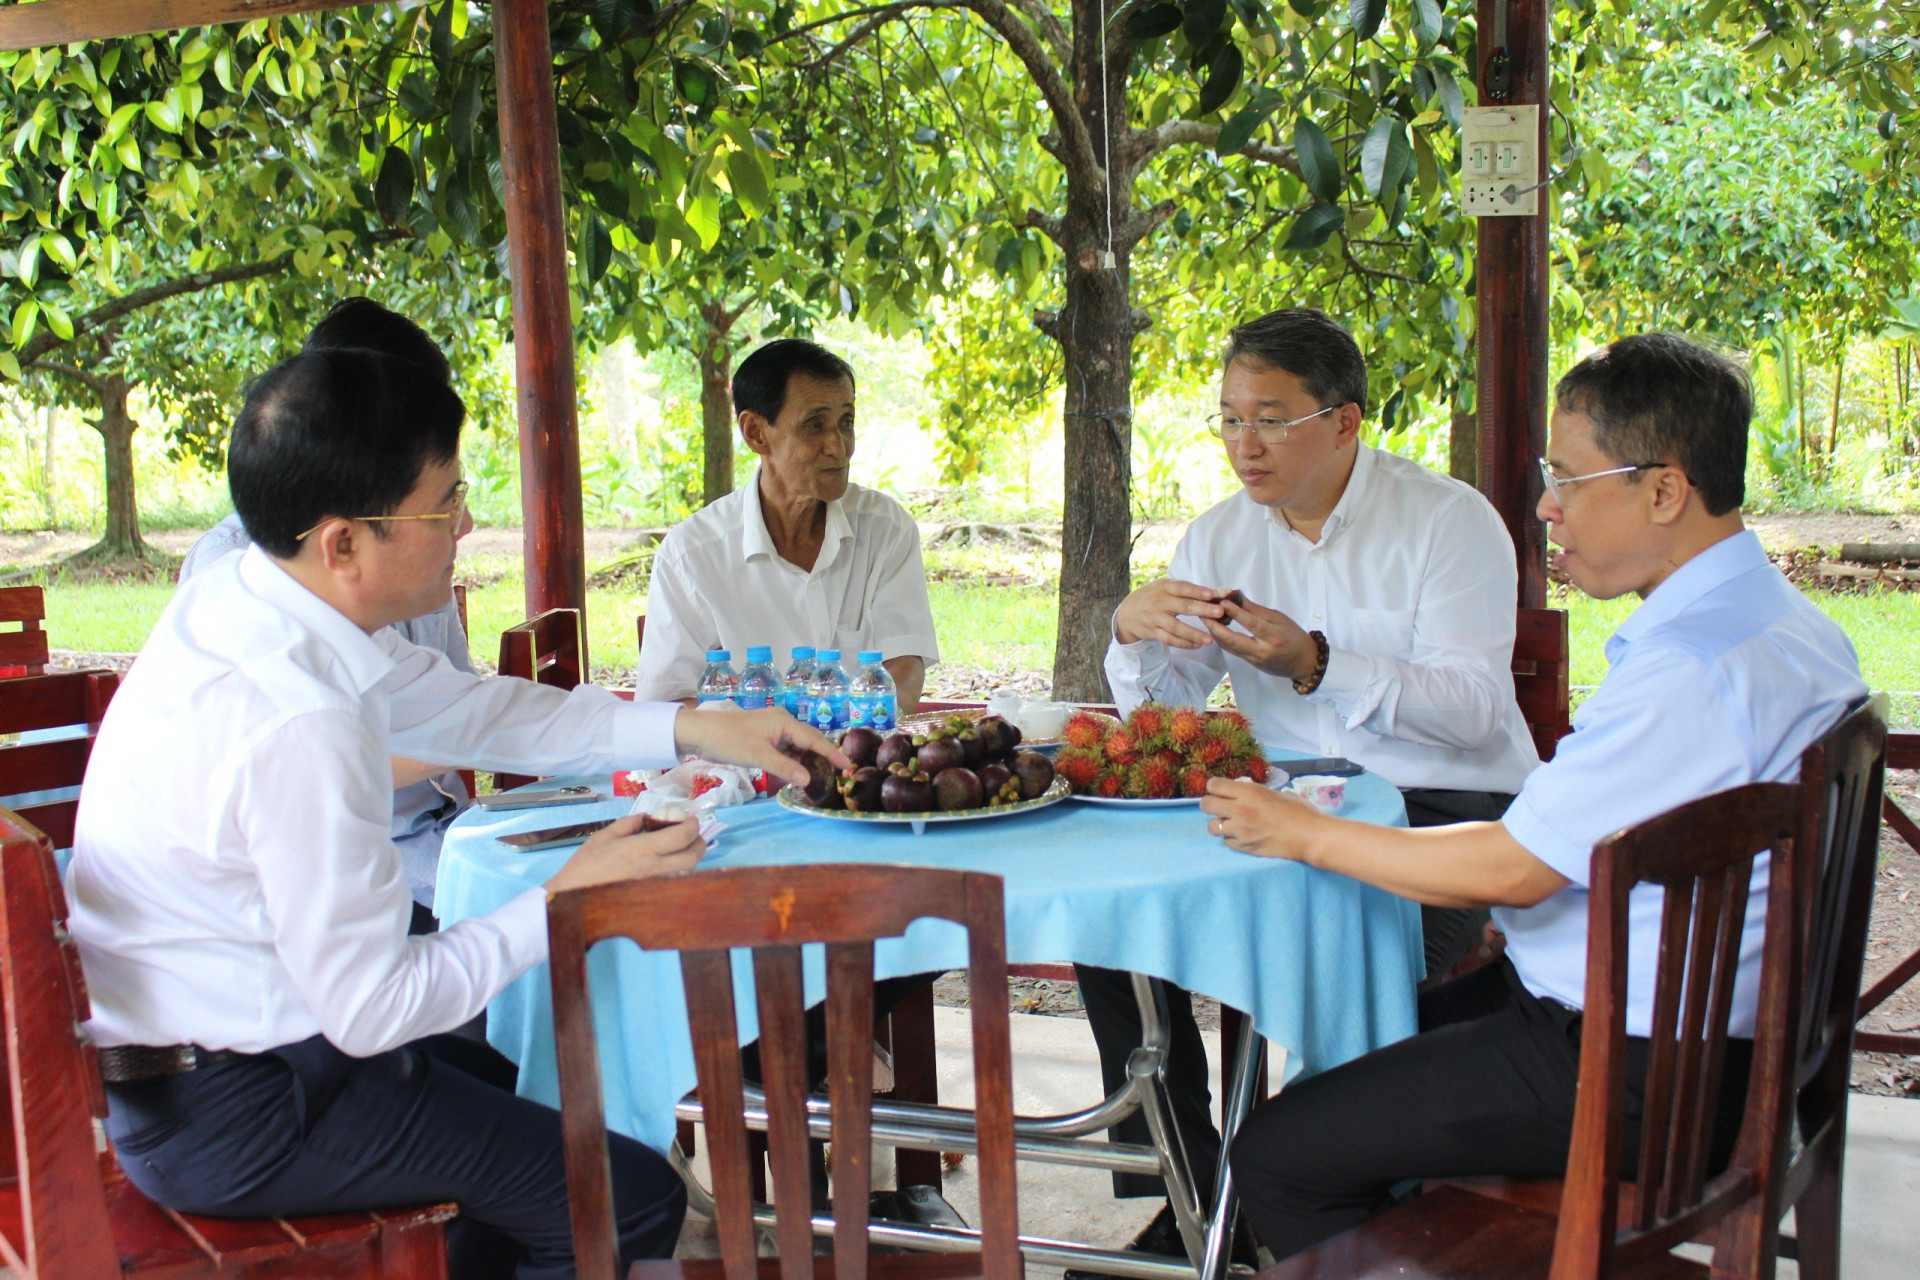 Ông Nguyễn Hải Ninh (thứ 2 từ phải qua) mong muốn gia đình ông Tấn phát huy hơn nữa hiệu quả của điểm du lịch.

